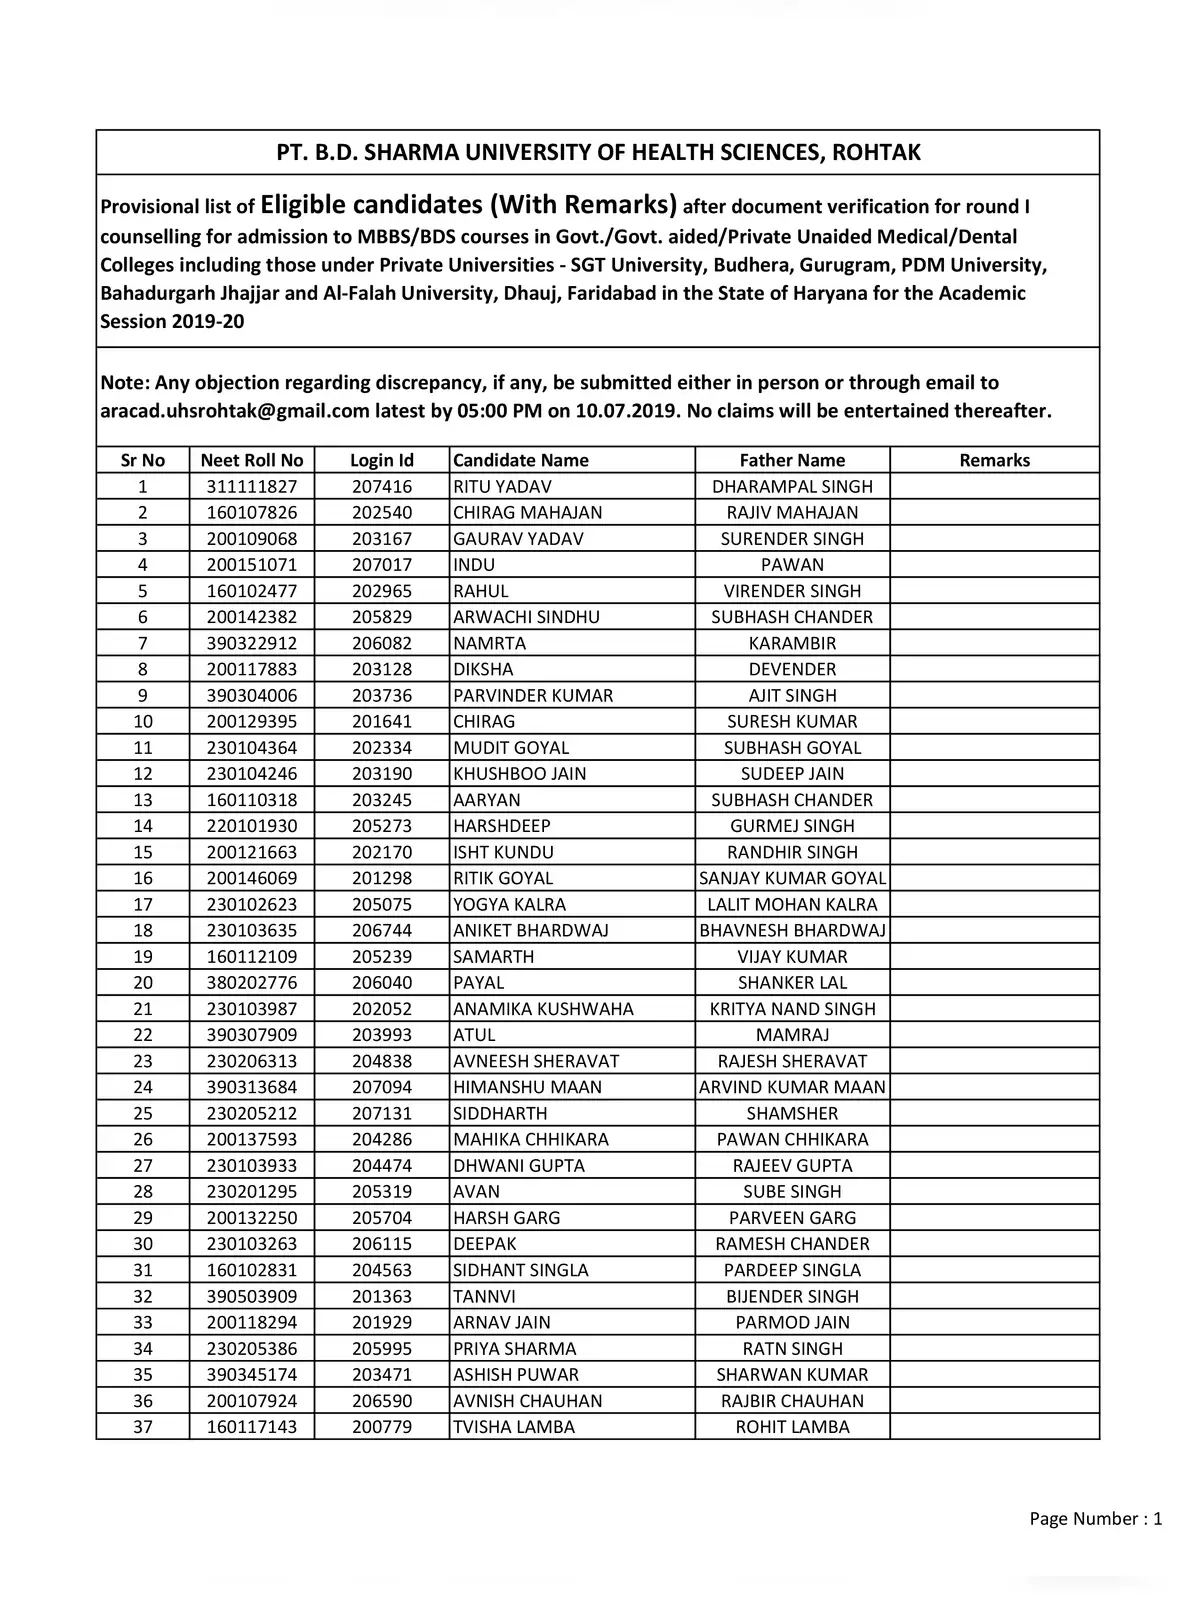 Haryana NEET Merit List 2019